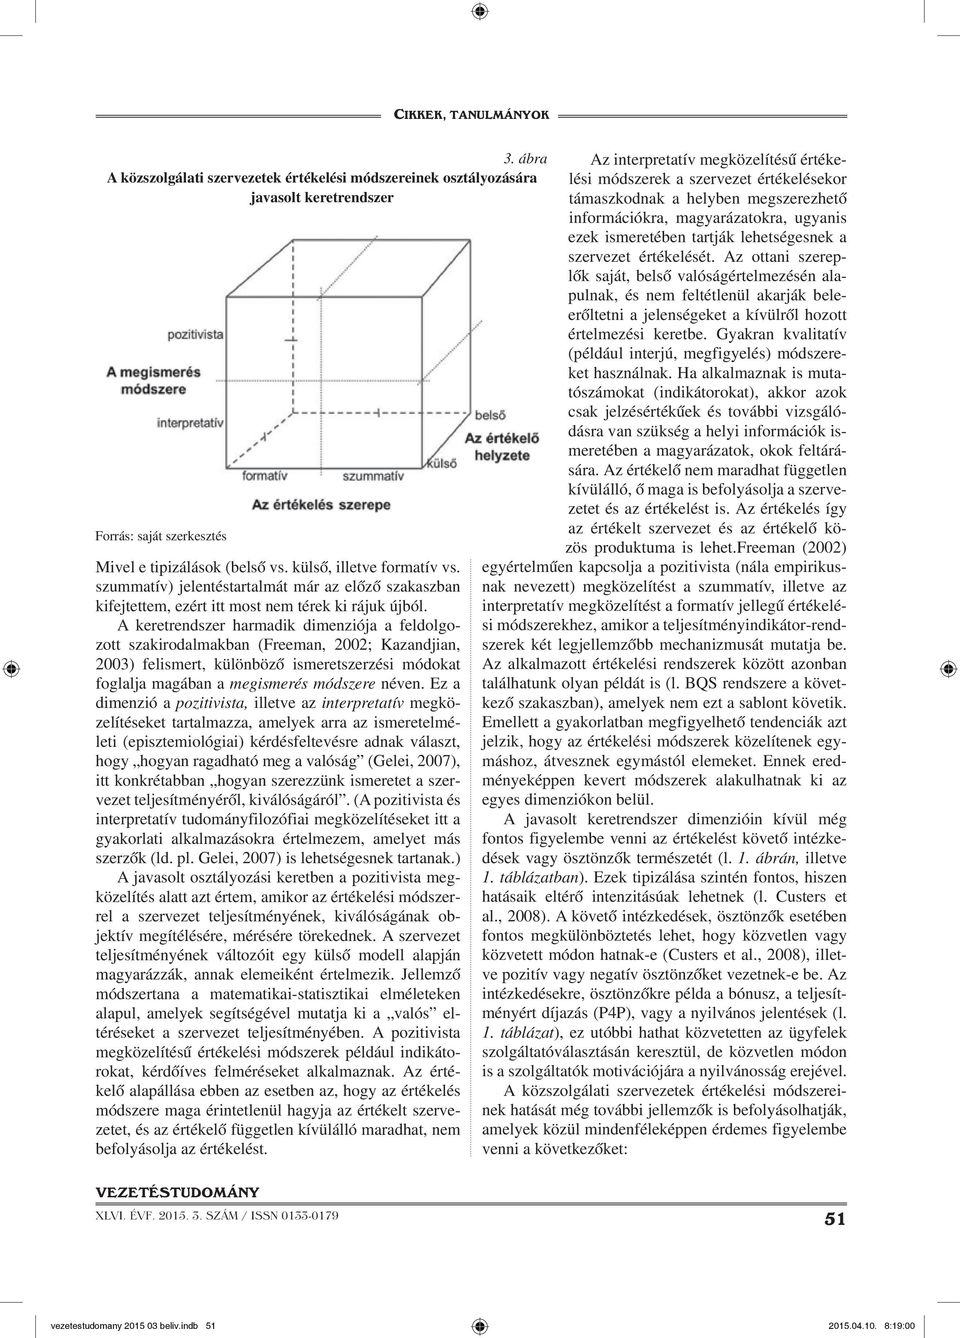 A keretrendszer harmadik dimenziója a feldolgozott szakirodalmakban (Freeman, 2002; Kazandjian, 2003) felismert, különböző ismeretszerzési módokat foglalja magában a megismerés módszere néven.